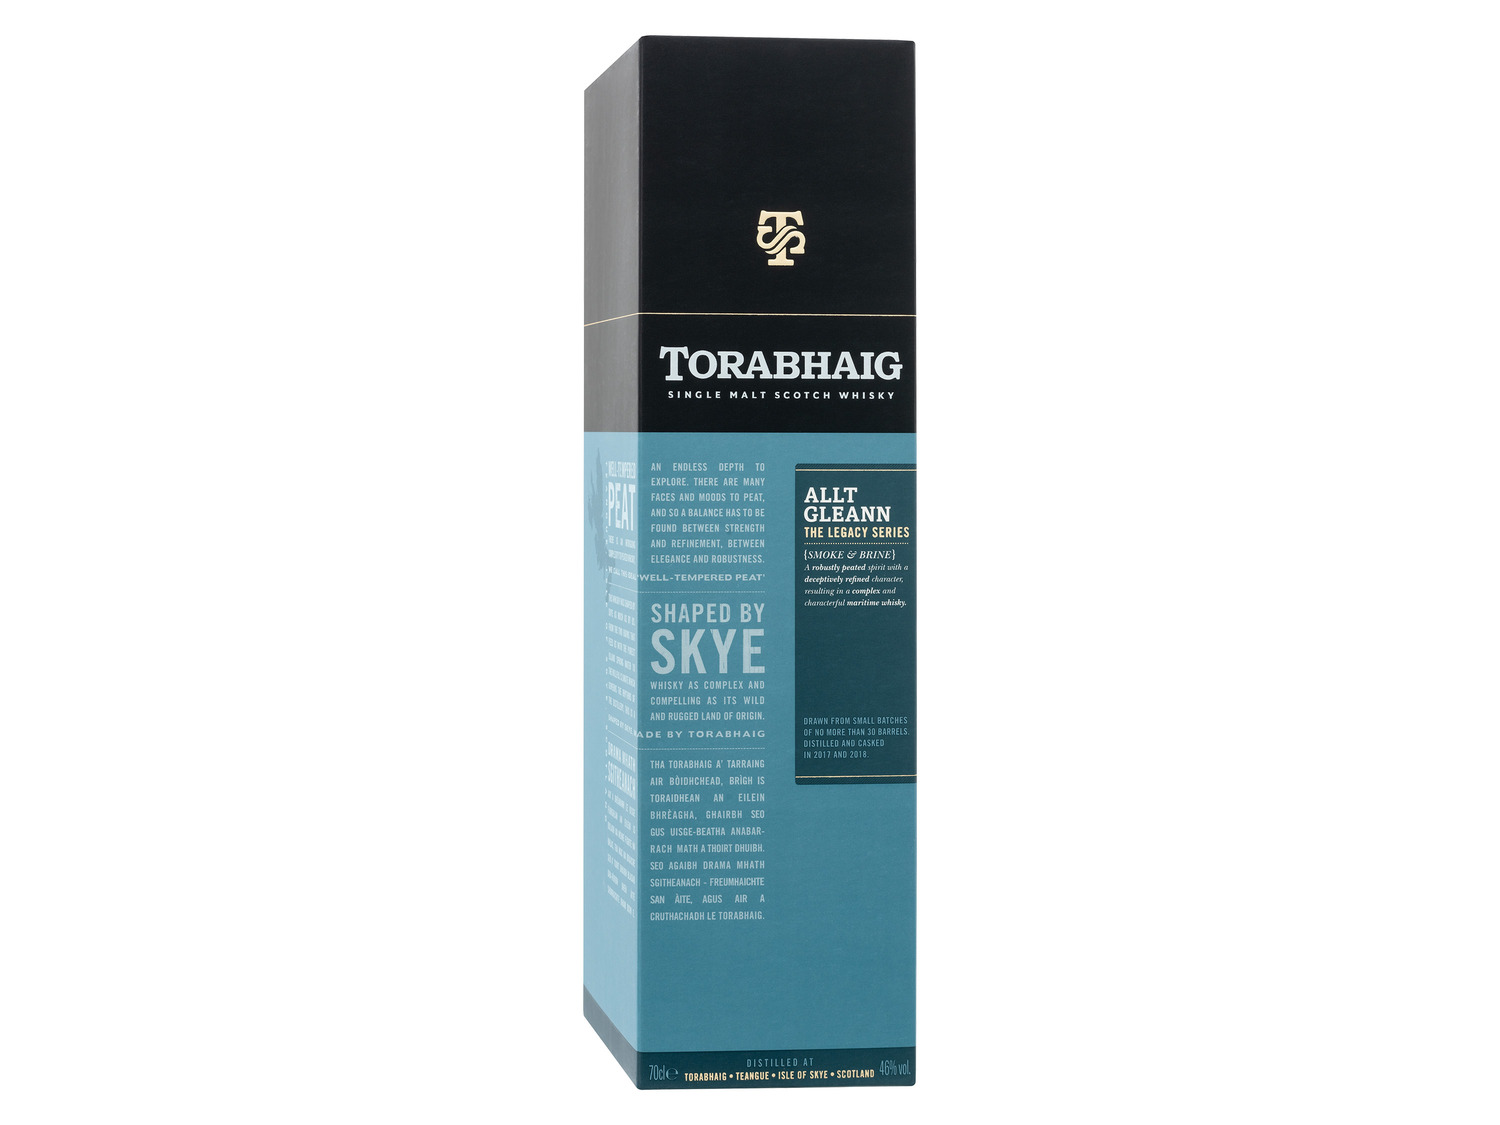 Torabhaig Single Malt Scotch Le… Whisky Allt The Gleann